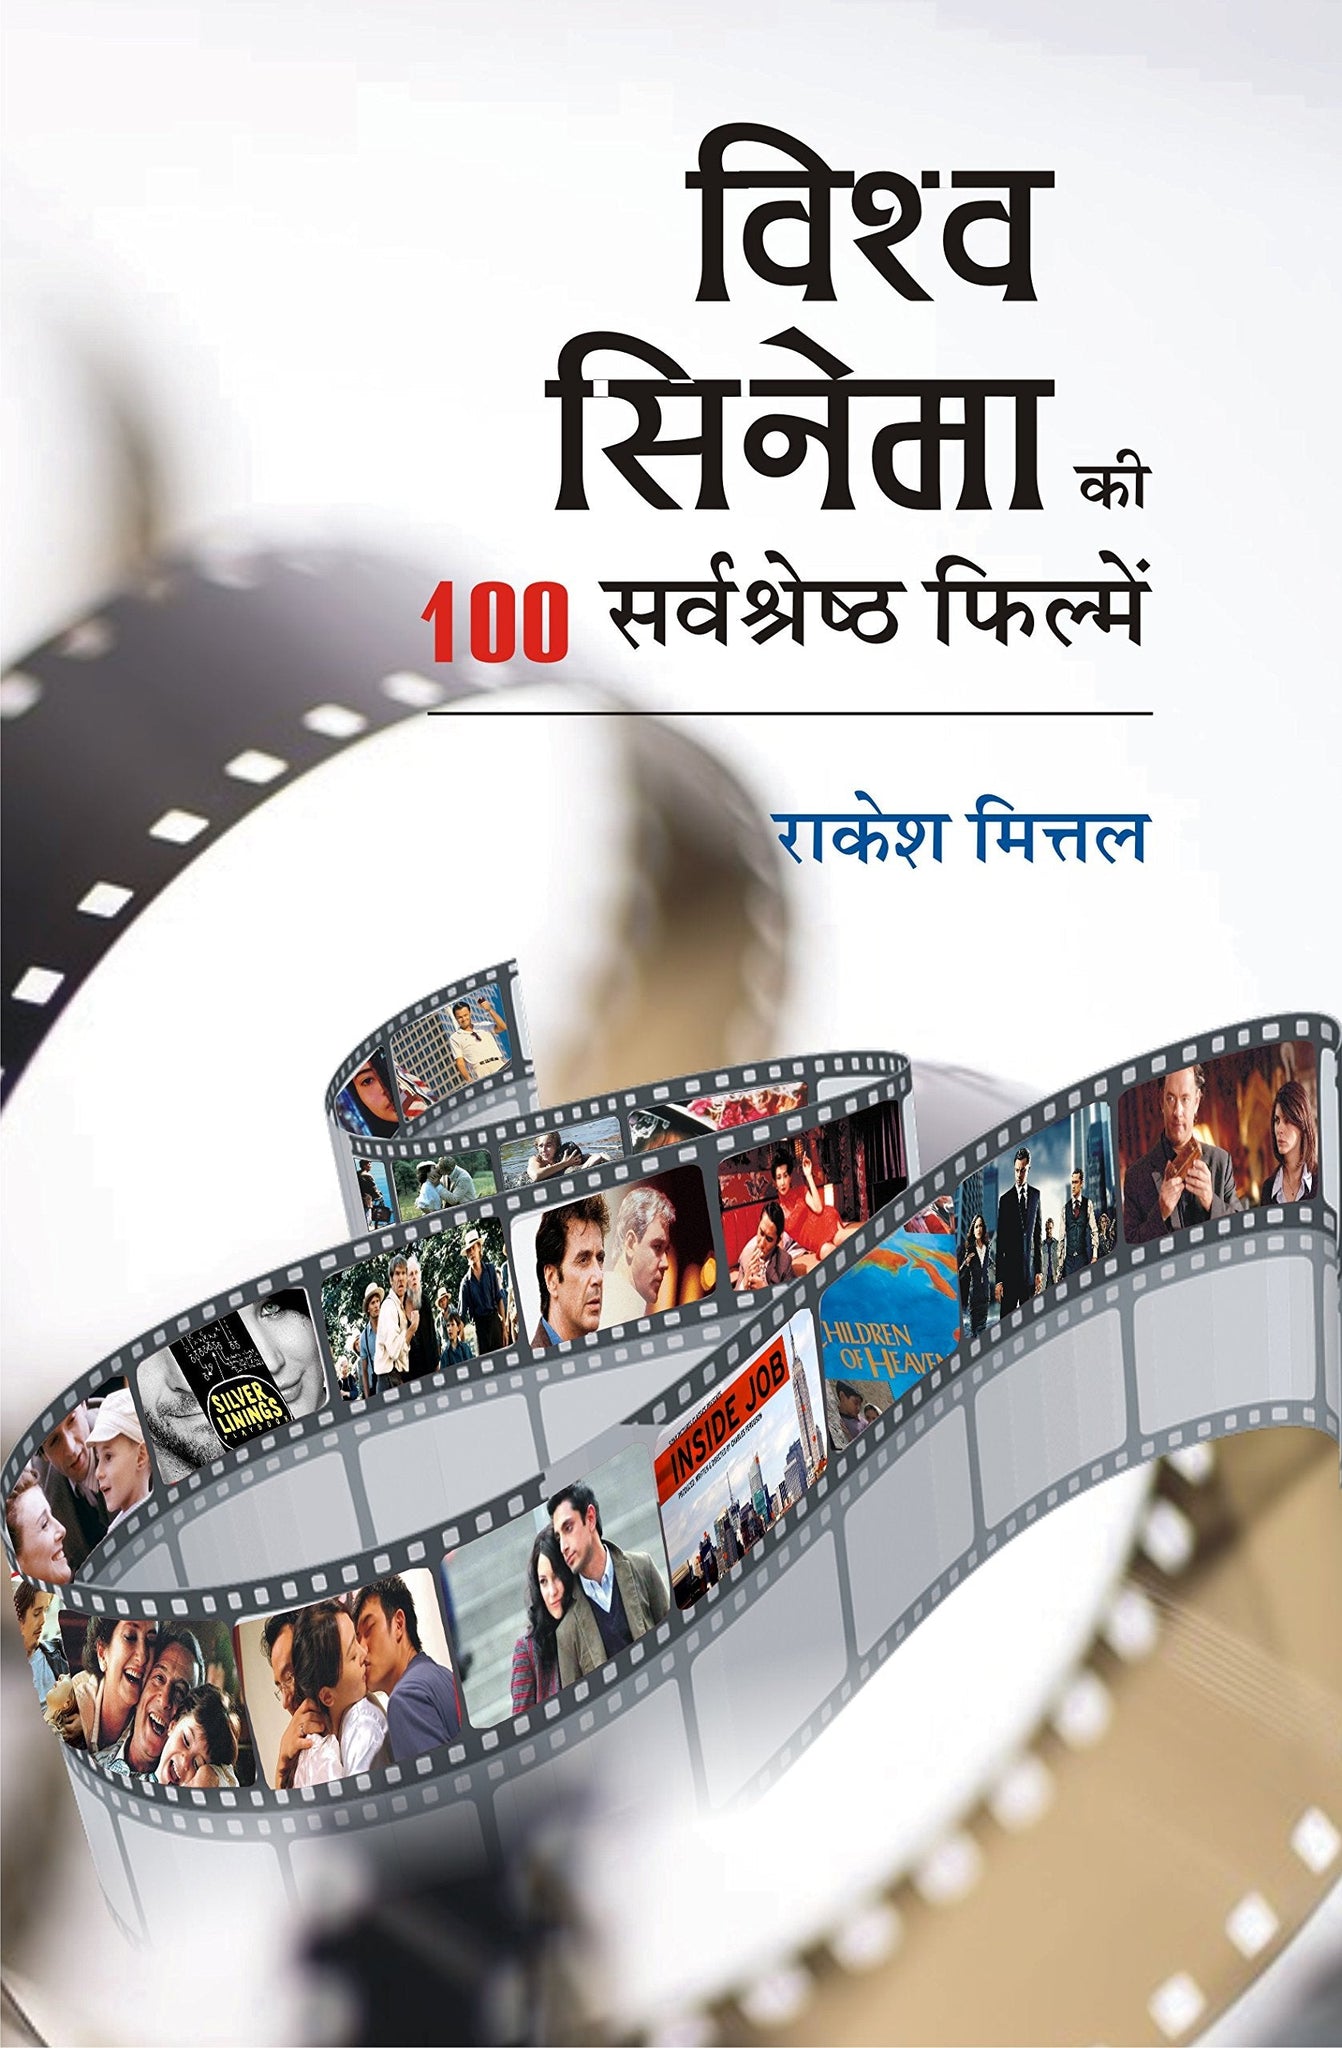 Vishwa Cinema Ki 100 Sarvasrestha Filmein